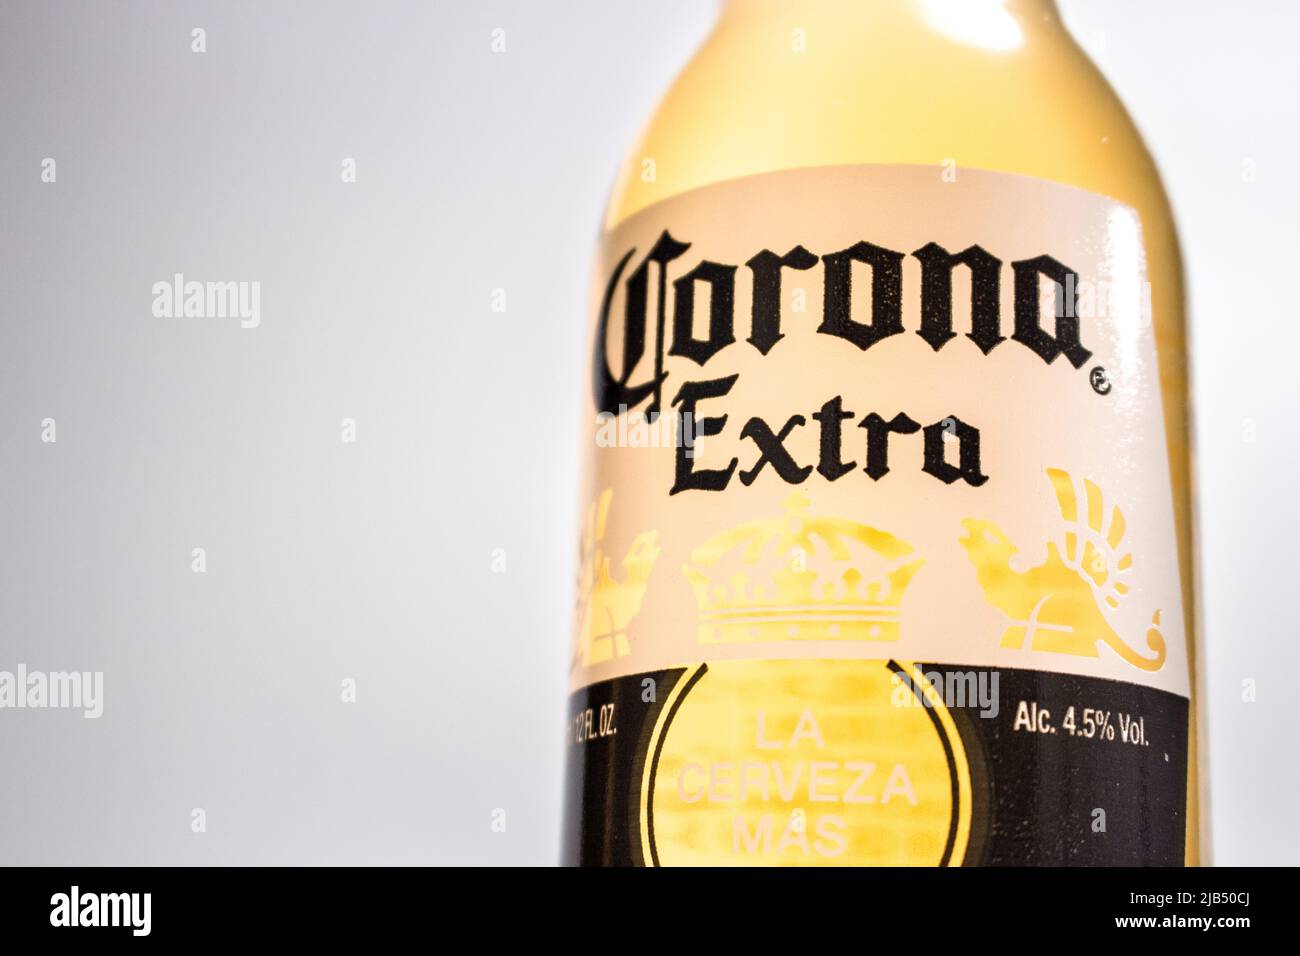 Image de Corona Extra. Corona Extra est l'une des bières les plus vendues dans le monde et pâles produites par Cervecería Modelo au Mexique Banque D'Images